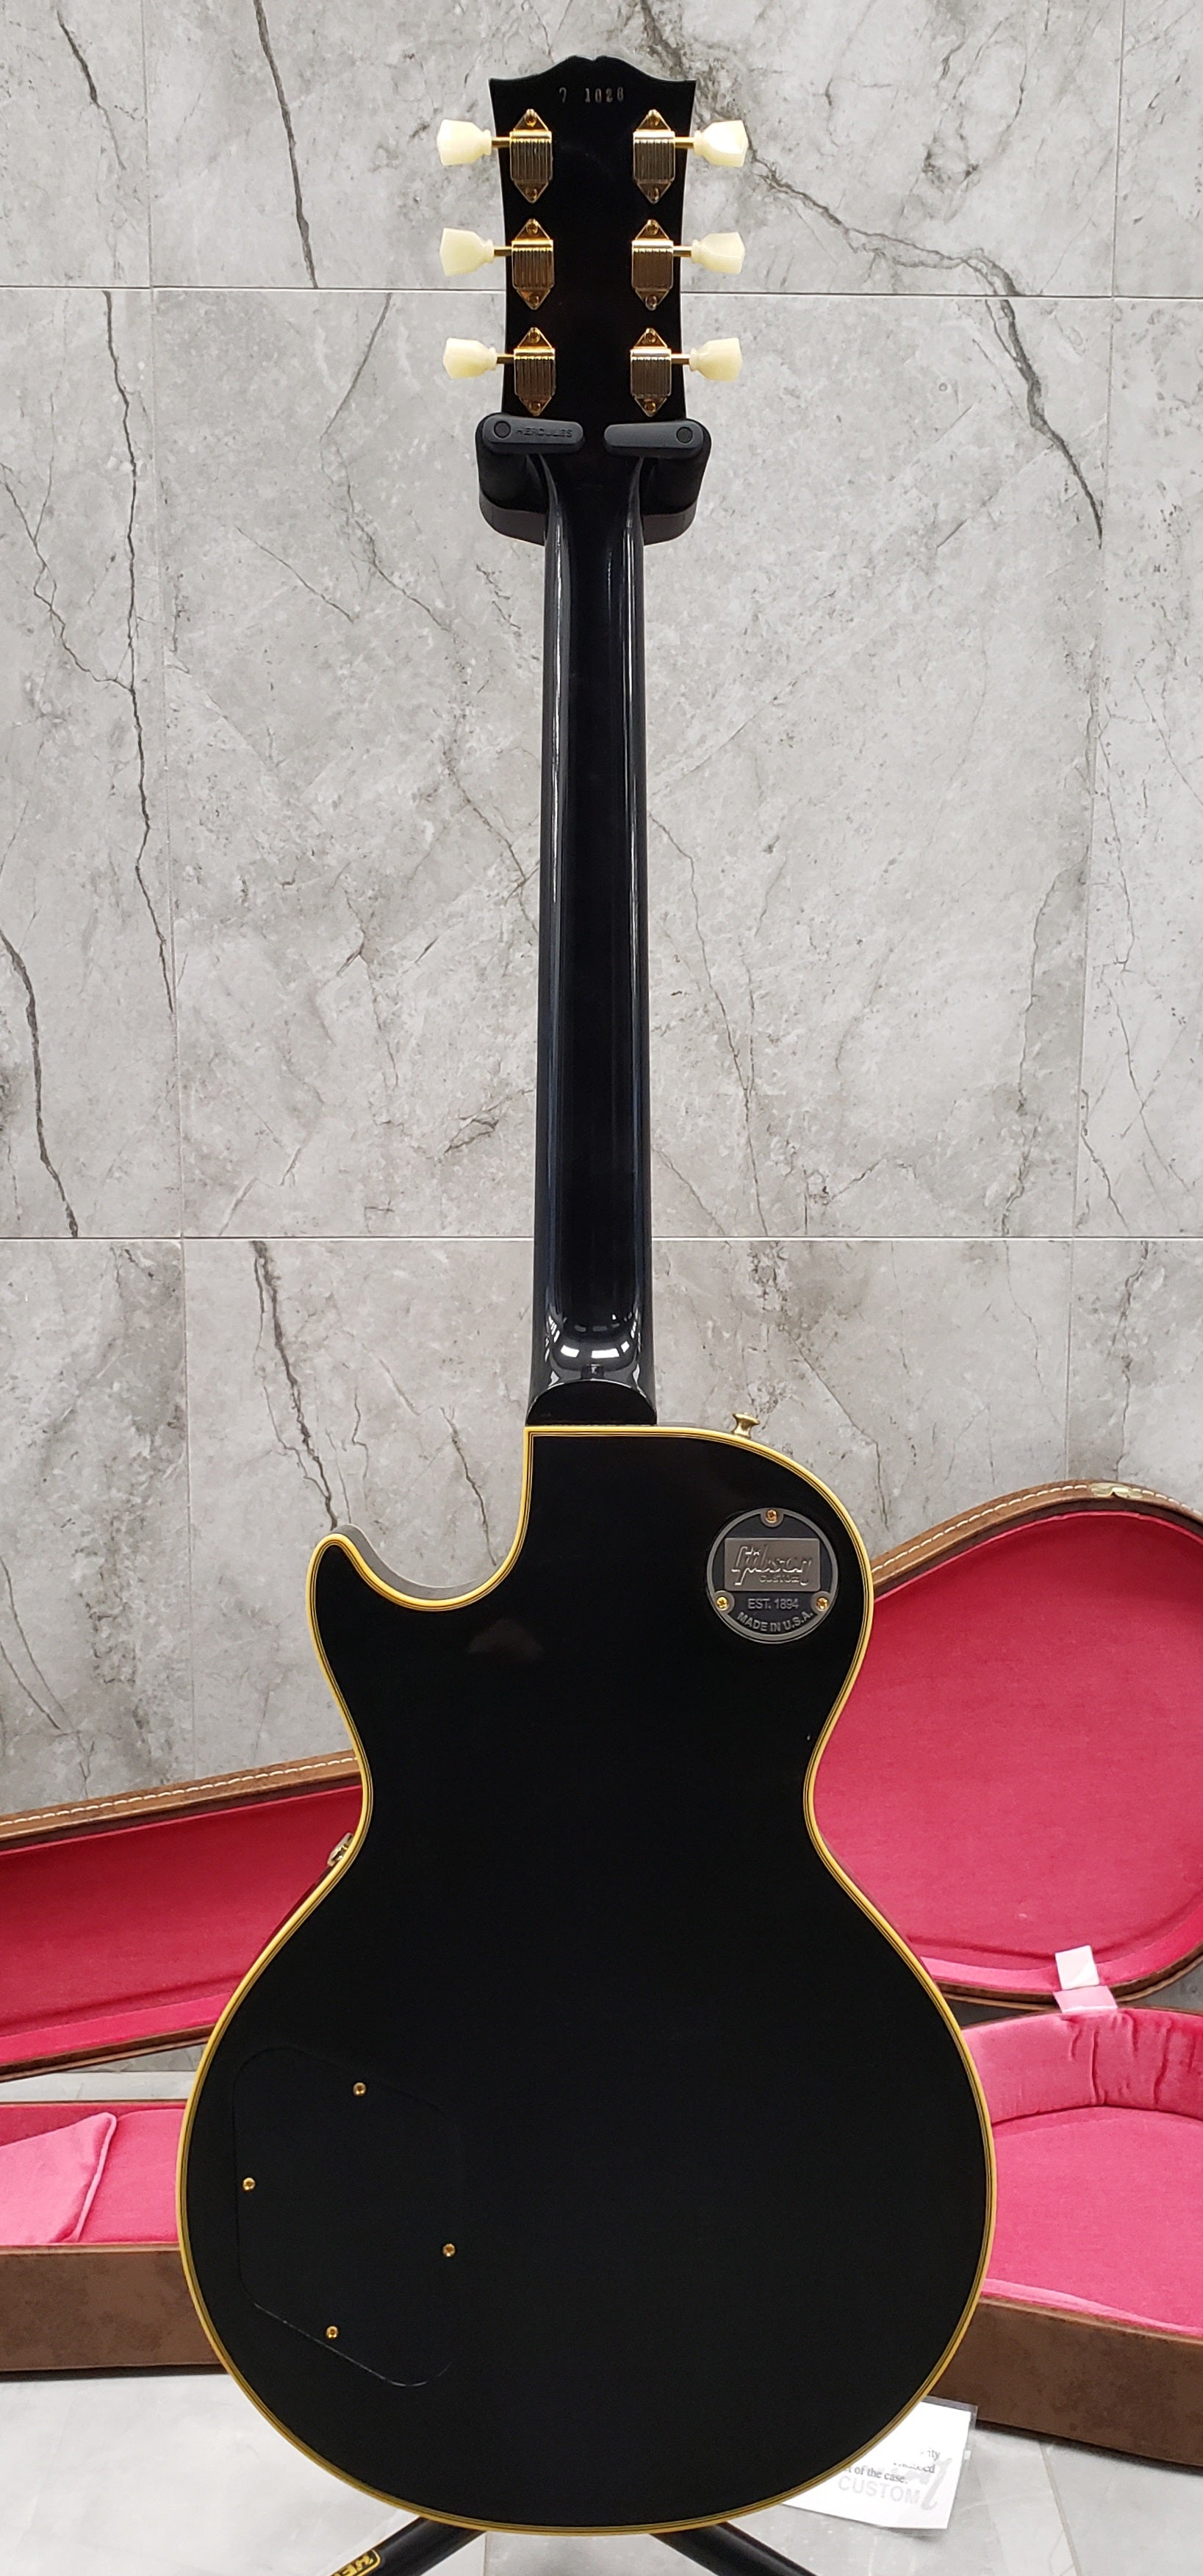 Gibson Custom Shop 1957 Les Paul Custom Reissue 3 Pickup VOS LPB357VOEBGH SERIAL NUMBER 7 1828 - 9.8LBS